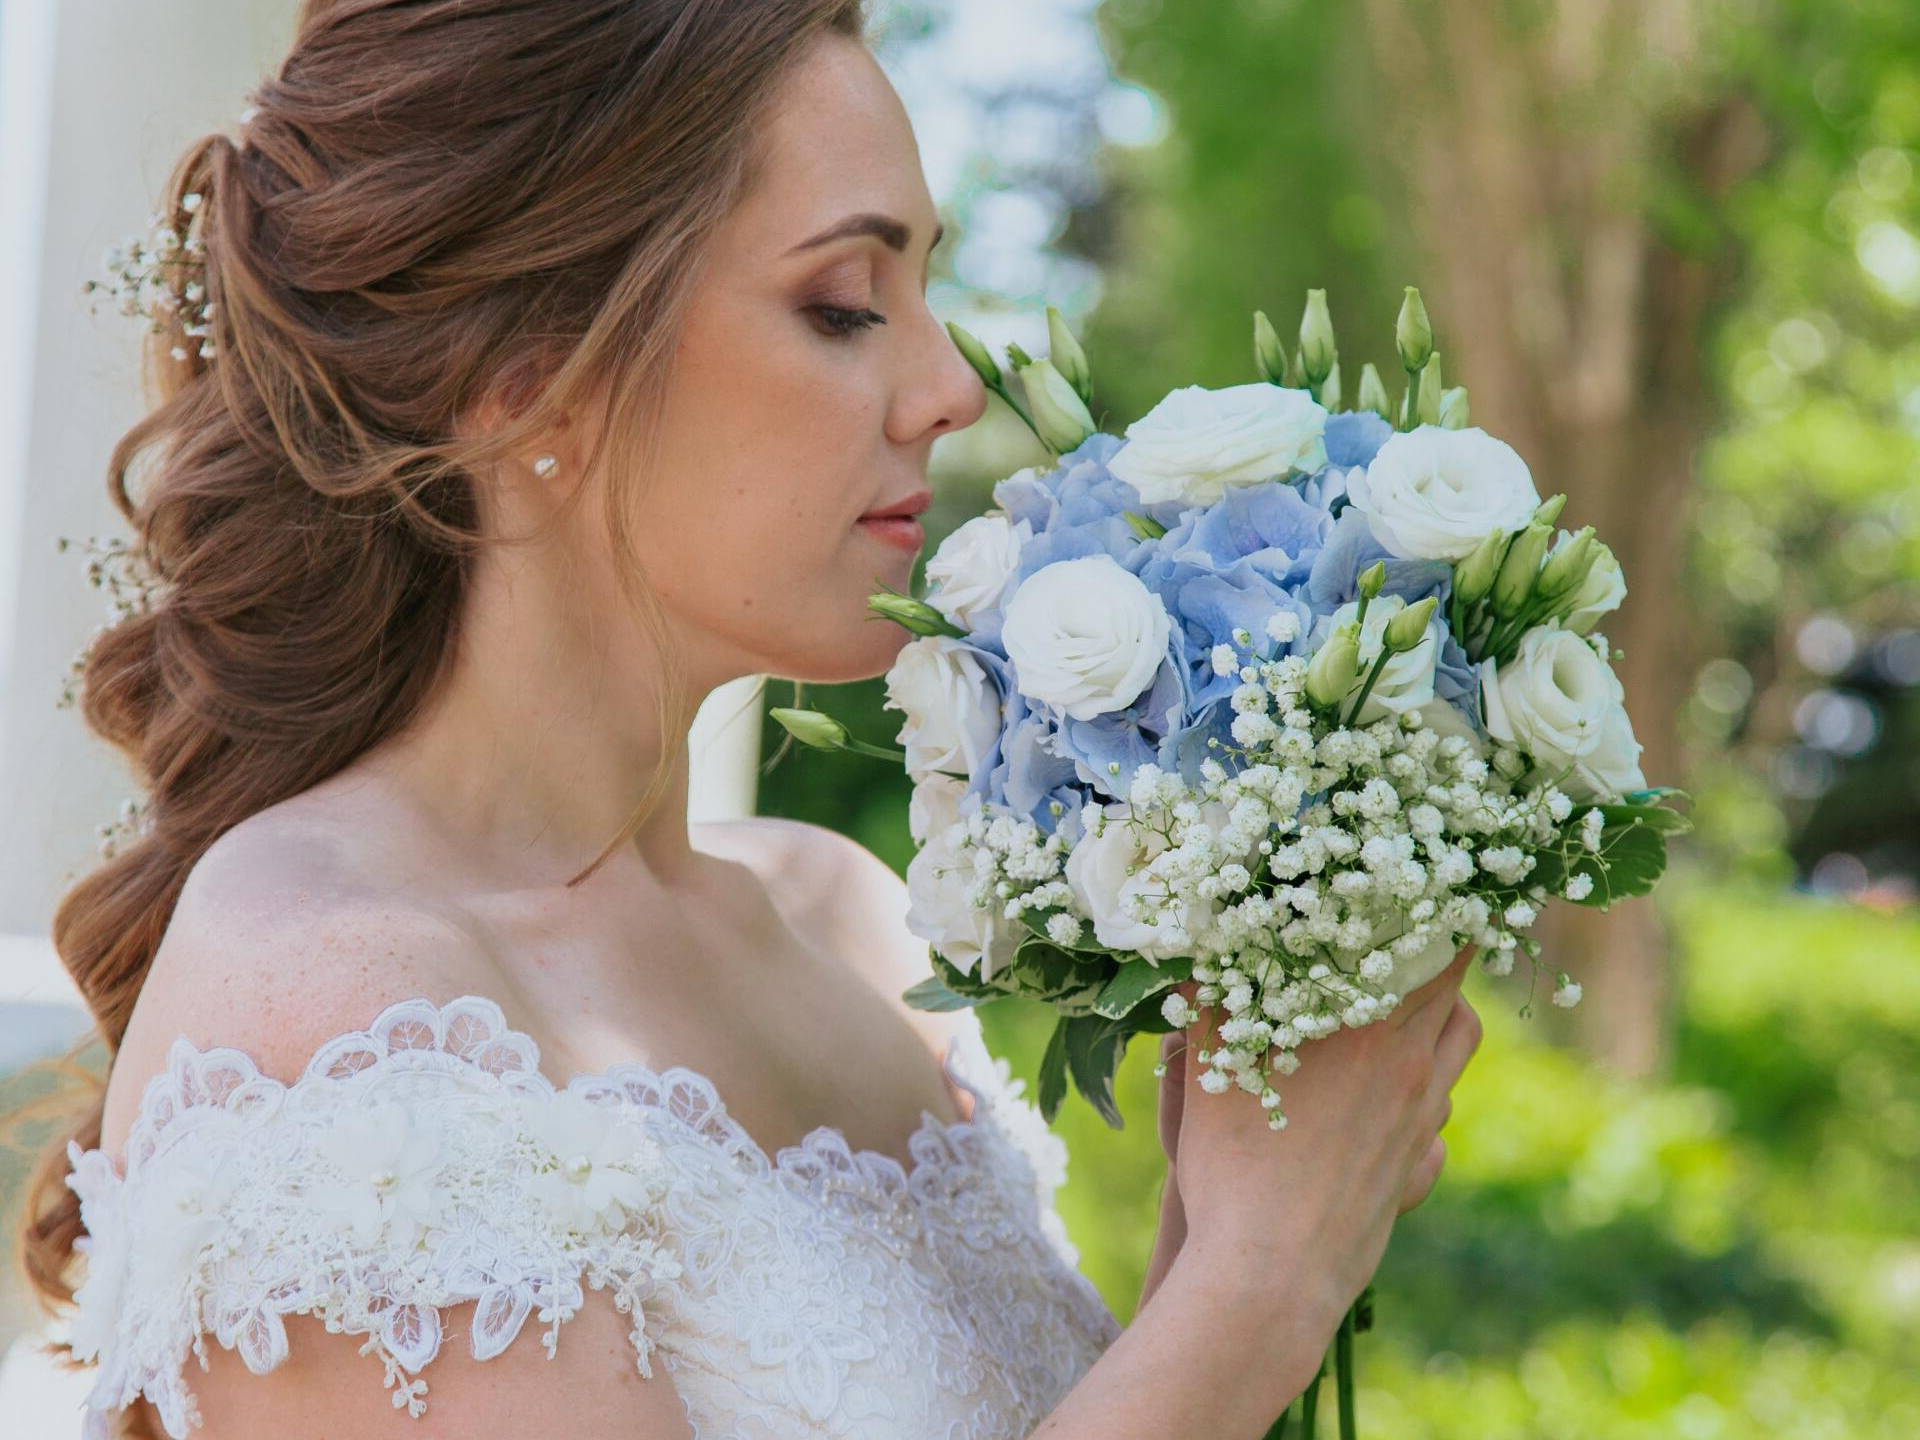 Floristry arrangements, Bridal Services,